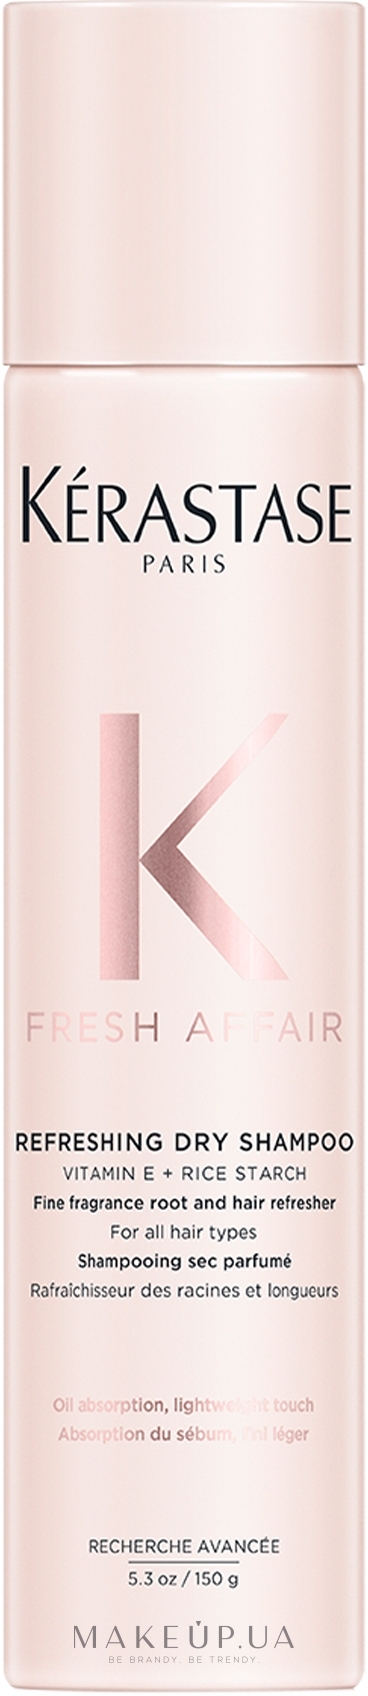 Освежающий сухой шампунь для волос - Kerastase Fresh Affair Dry Shampoo — фото 150g